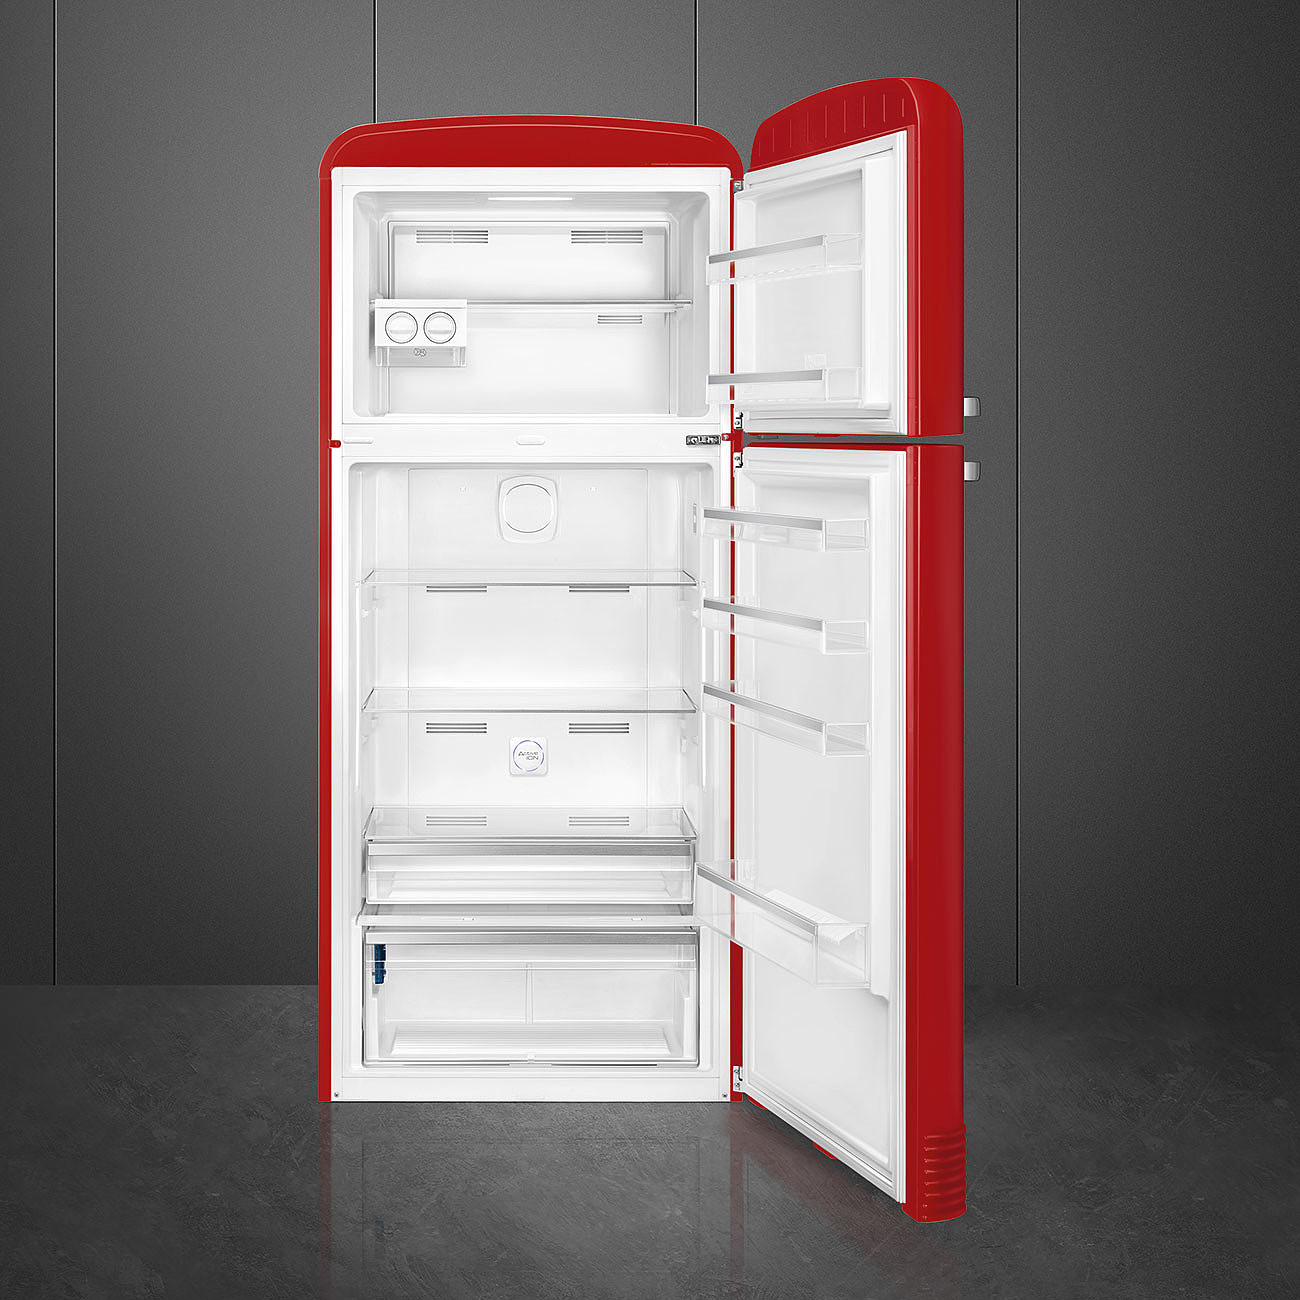 SMEG FAB50RRD5 Отдельностоящий двухдверный холодильник, стиль 50-х годов, 80 см, красный, No-frost, петли справа